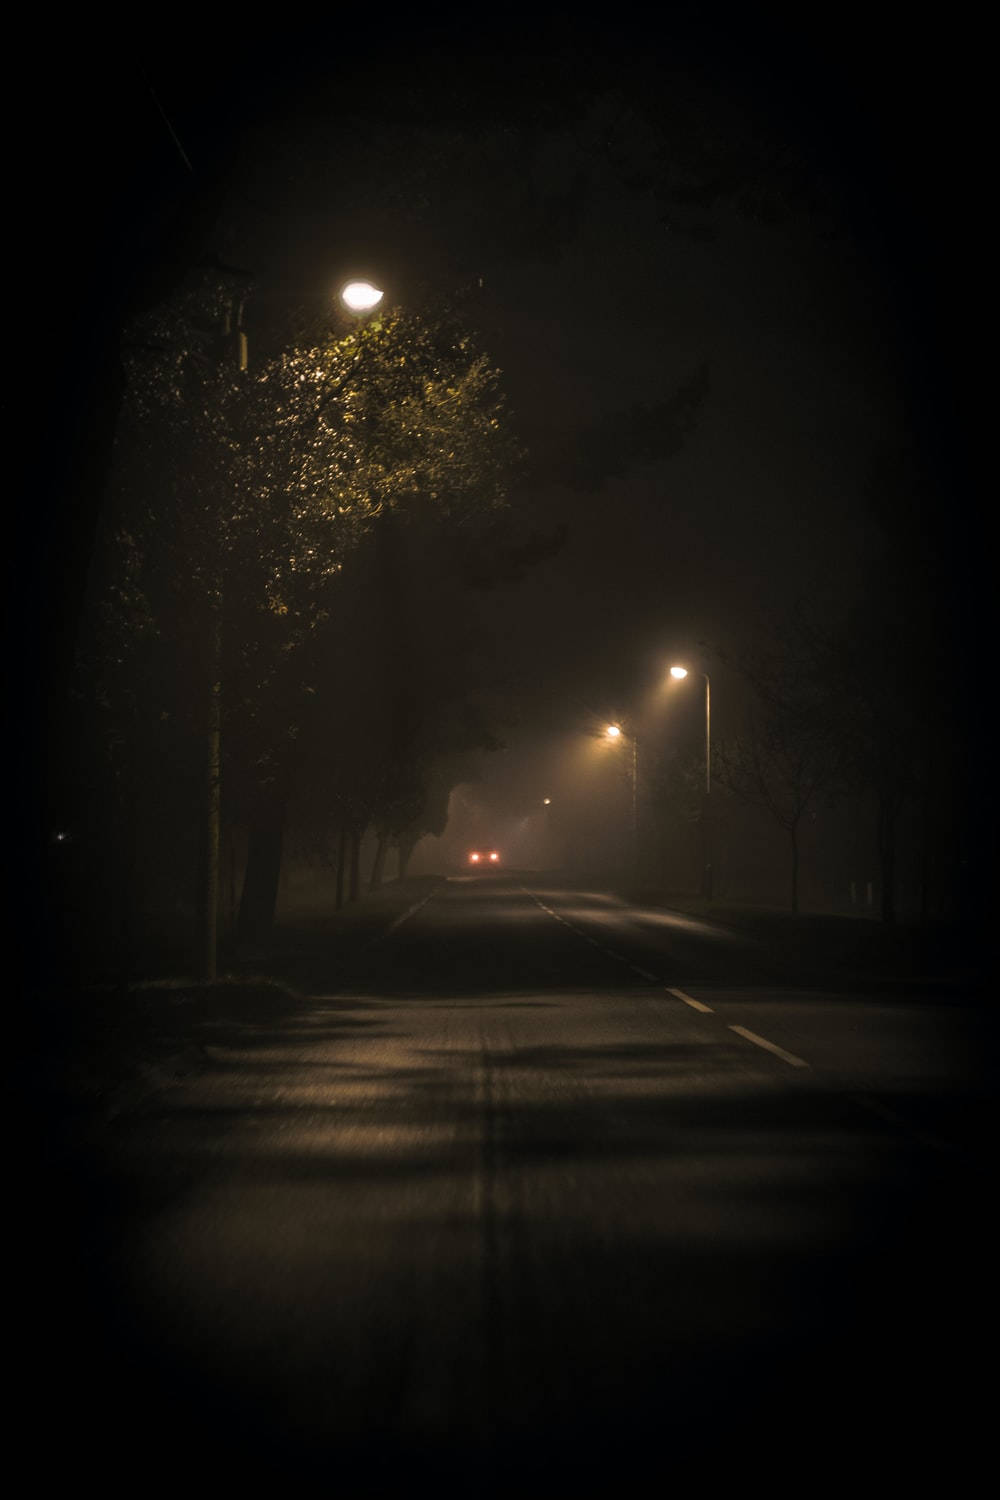 Dark Night Road In Sepia Colors